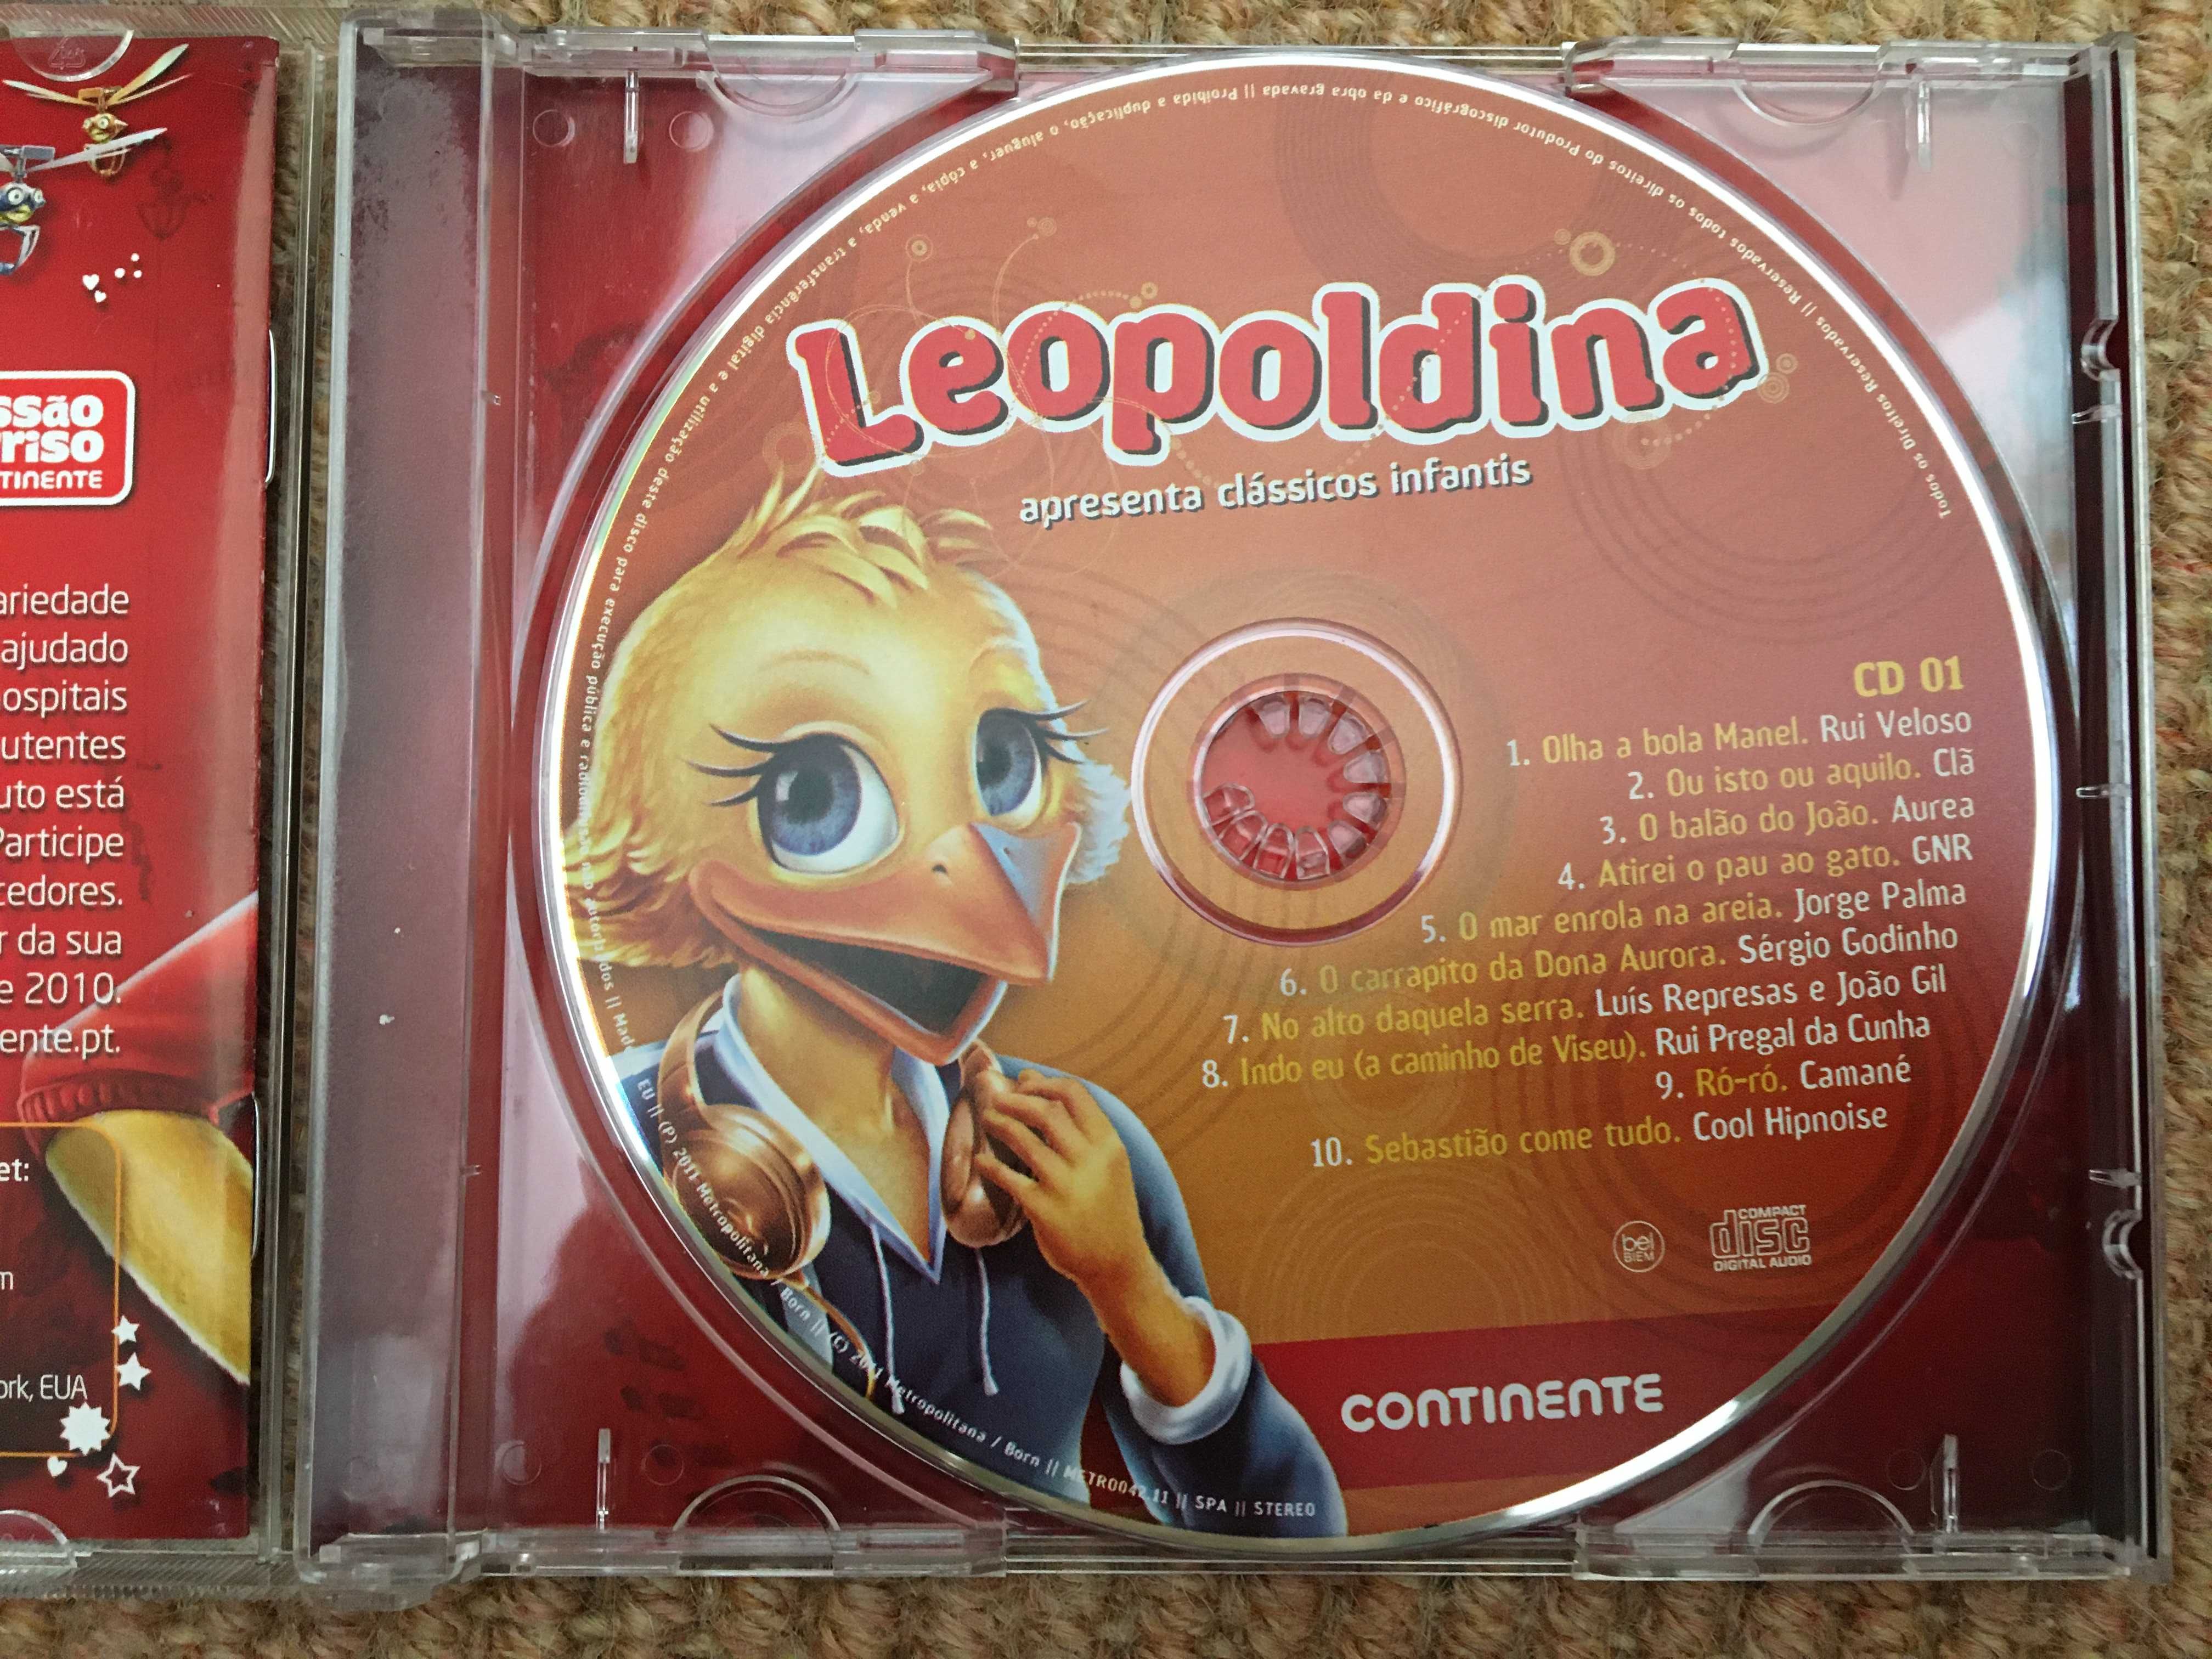 3 CDs de música Leopoldina